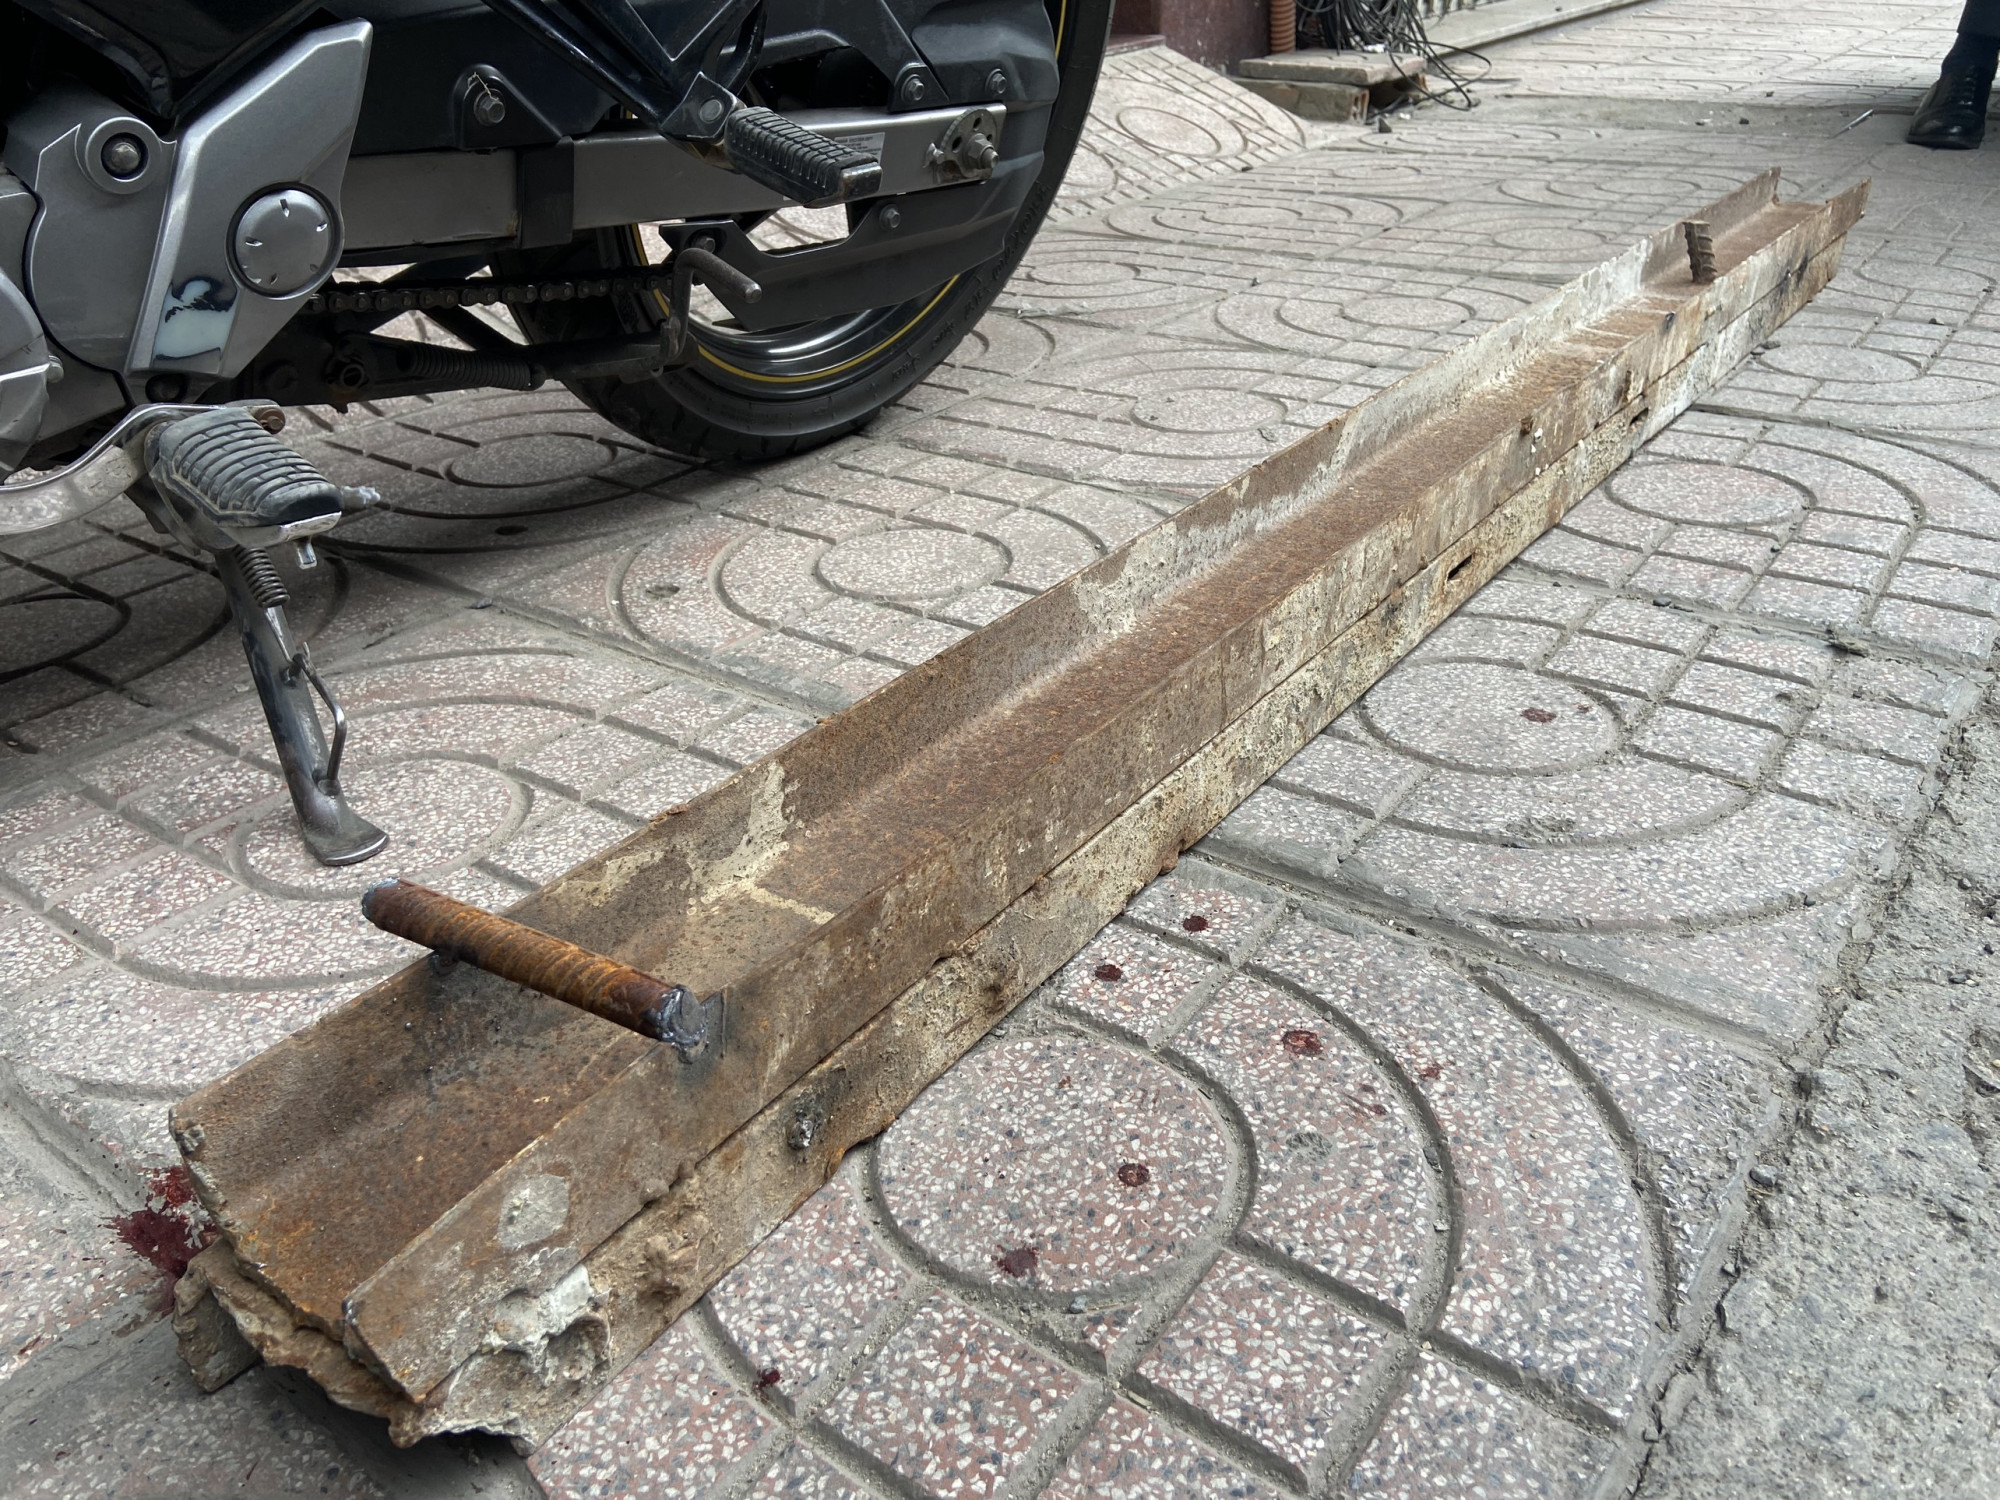 Thanh thép từ công trình xây dựng ở Nha Trang rơi trúng đầu người đi đường - Ảnh: N.H